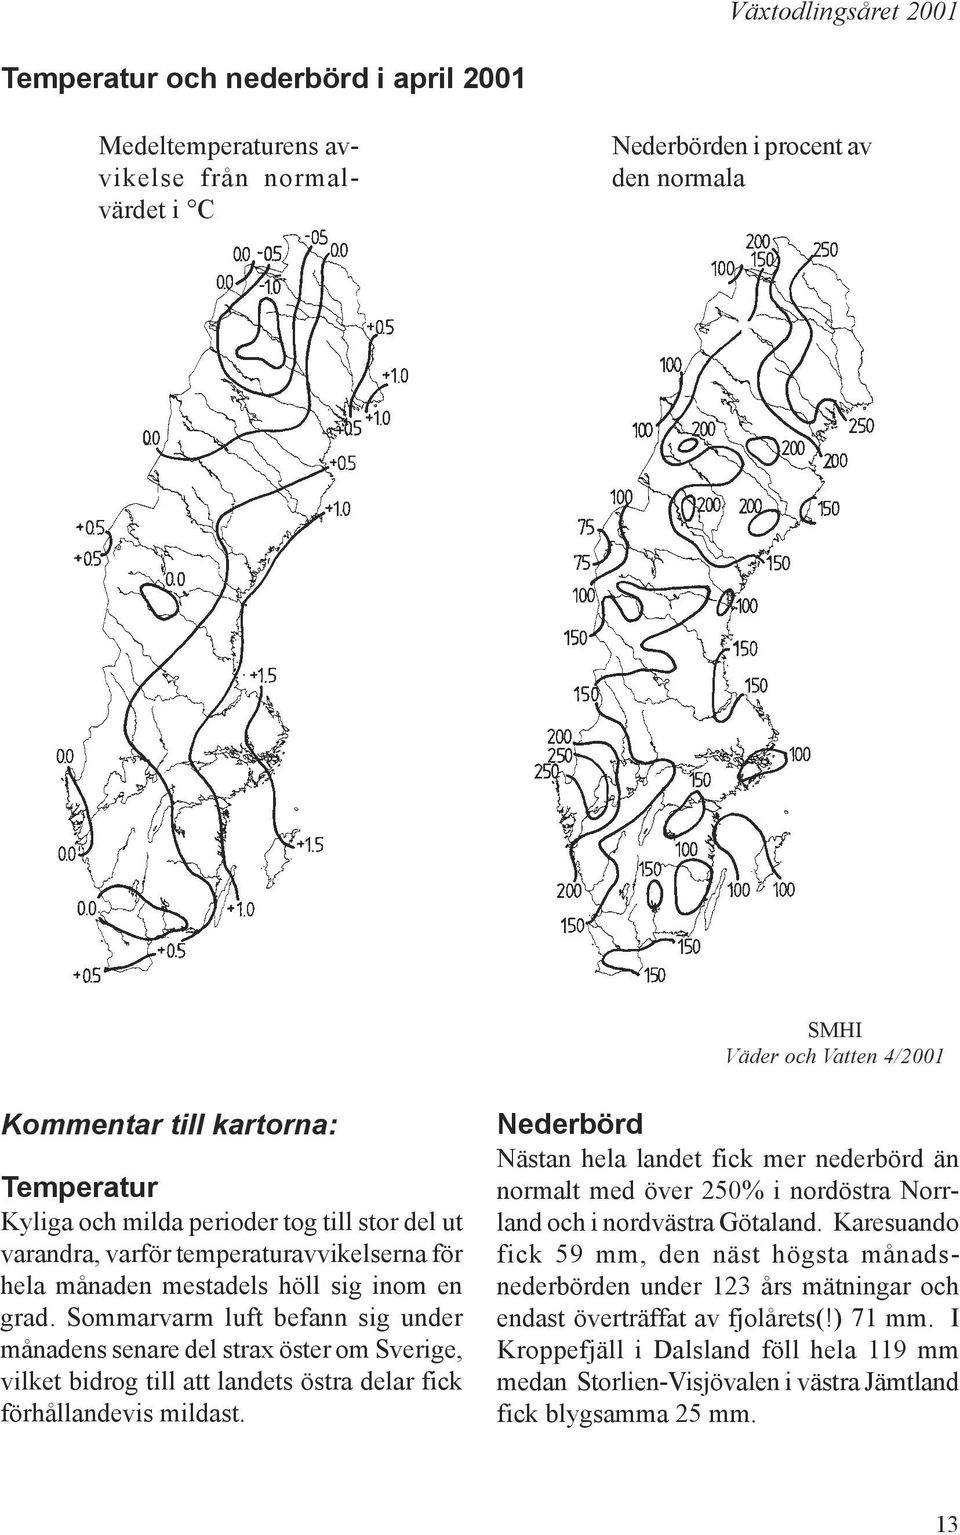 Nästan hela landet fick mer nederbörd än normalt med över 250% i nordöstra Norrland och i nordvästra Götaland.